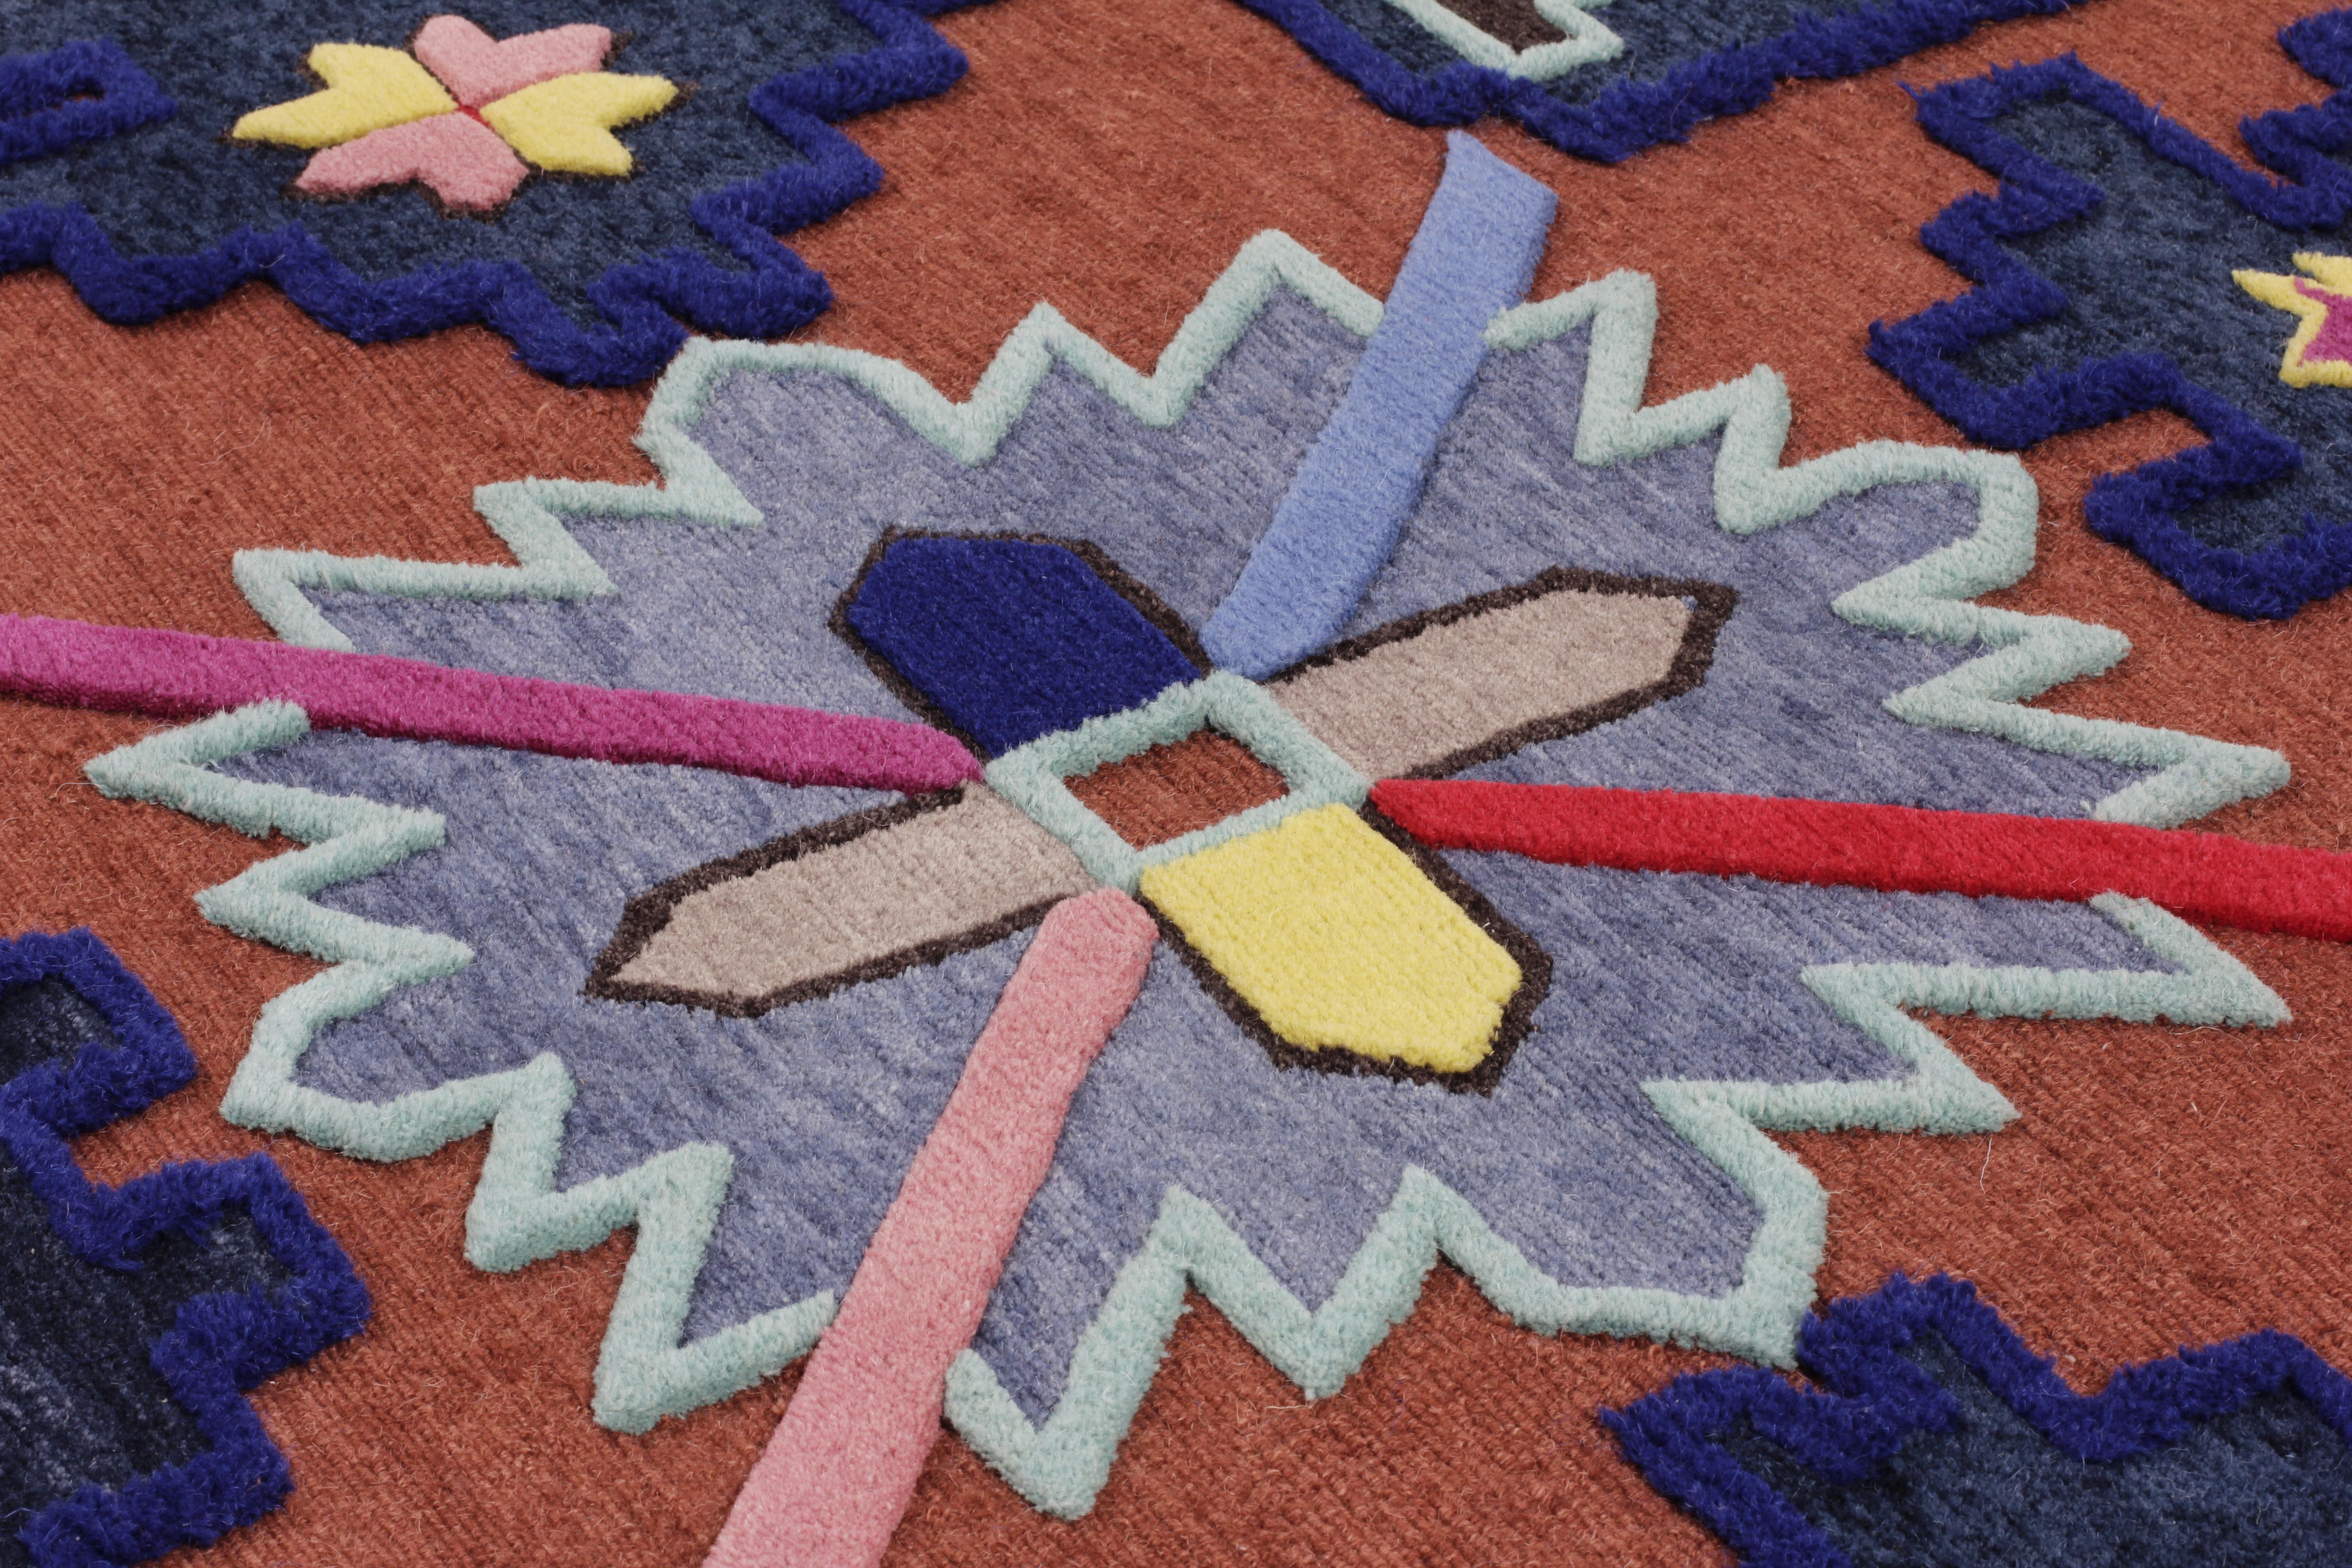 Noué à la main dans l'atelier de cc-tapis à Katmandou, au Népal. Le tapis est fabriqué avec un tissage en coton, une laine de l'Himalaya et de la soie pure, provenant des régions entourant l'atelier. 152.000 nœuds individuels par mètre carré